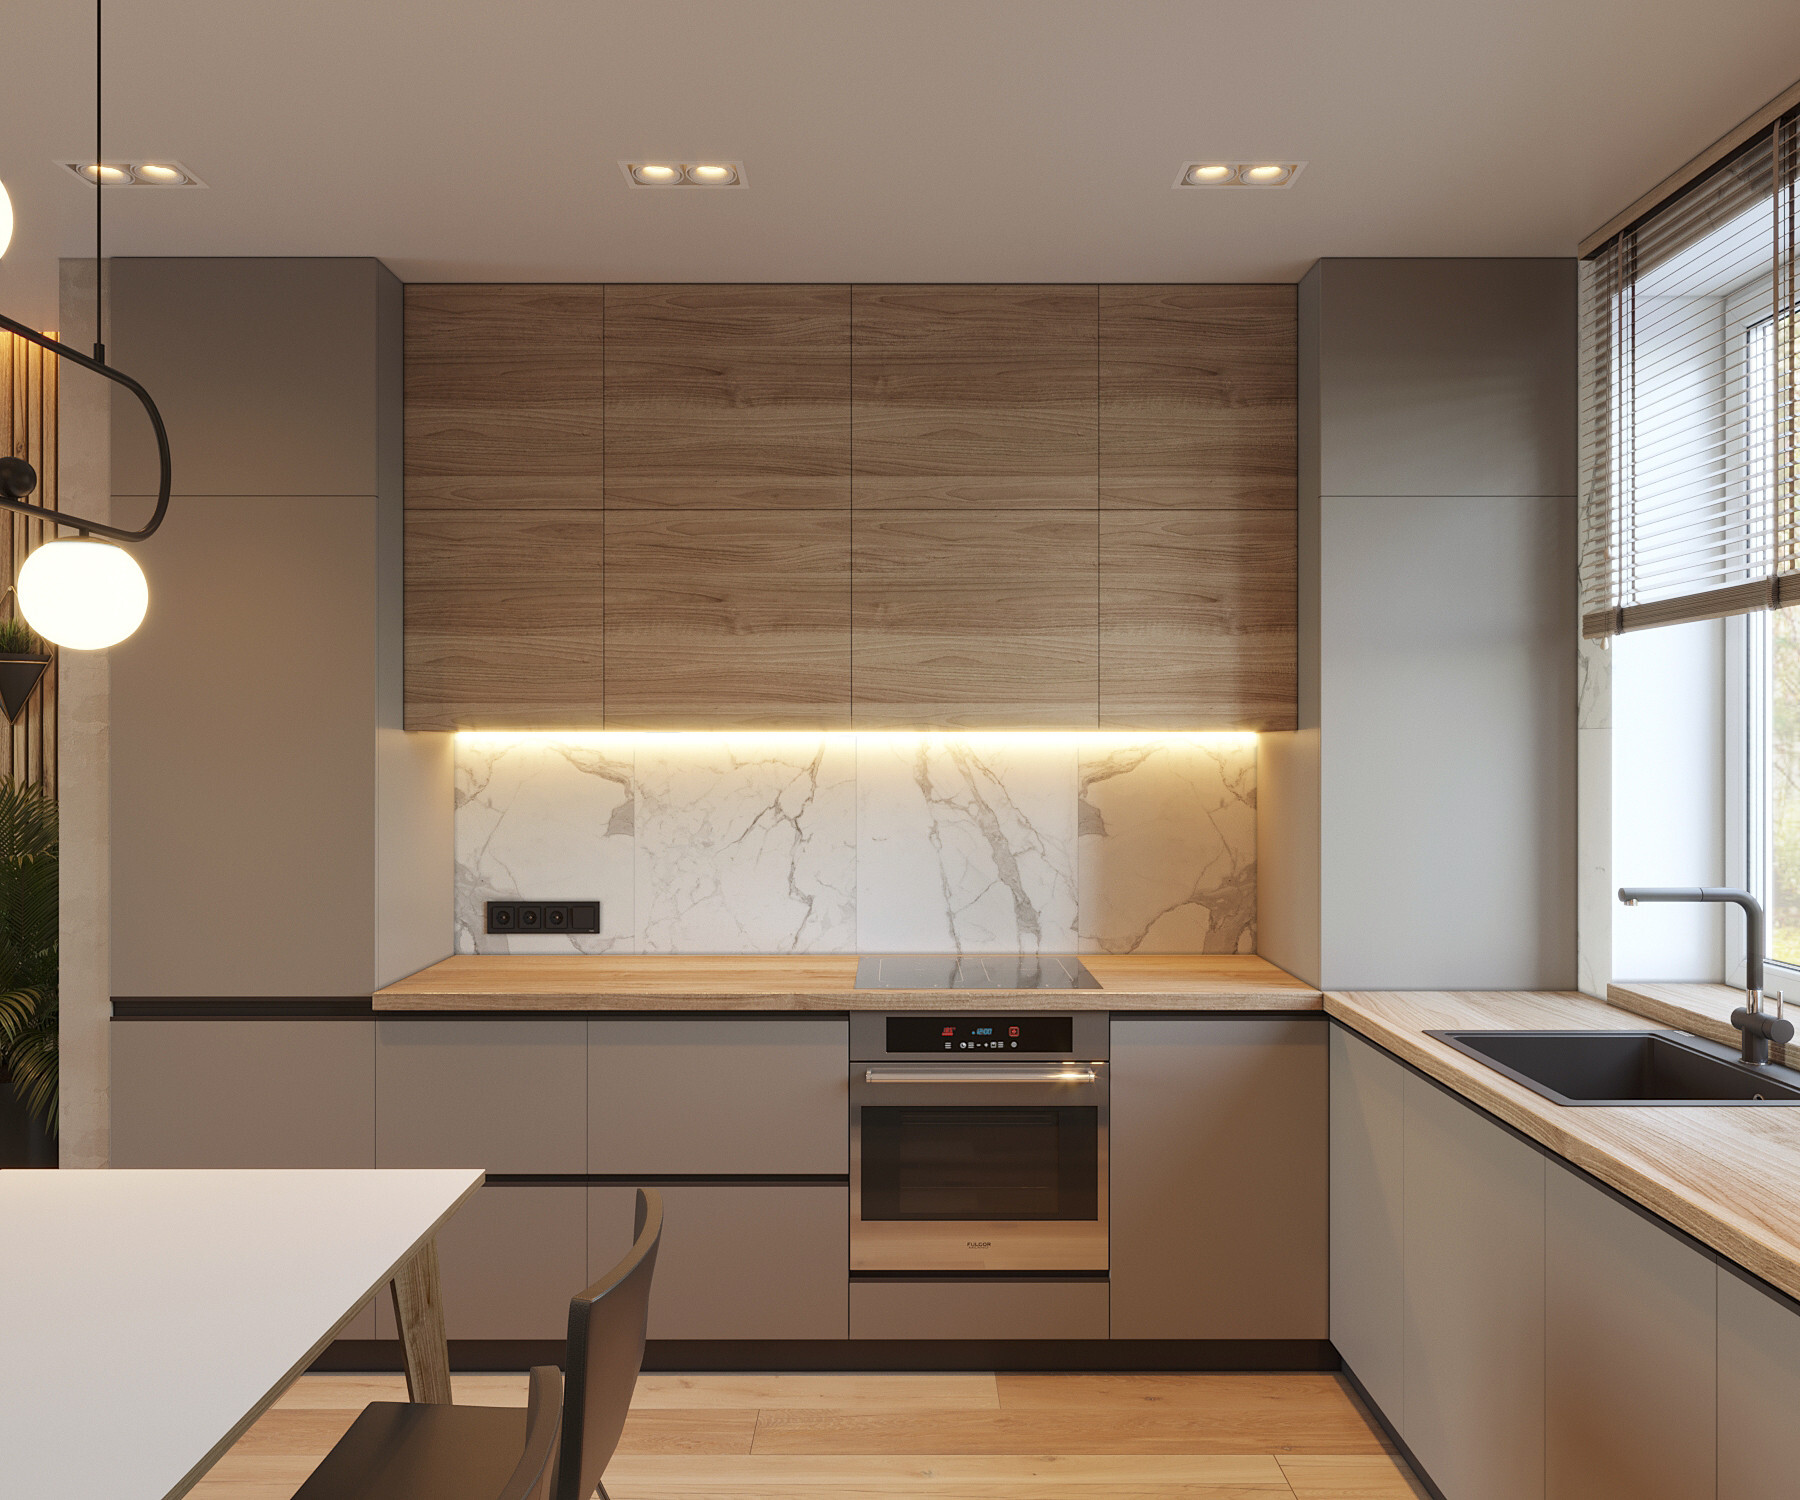 Интерьер кухни cветовыми линиями, подсветкой настенной и подсветкой светодиодной в современном стиле